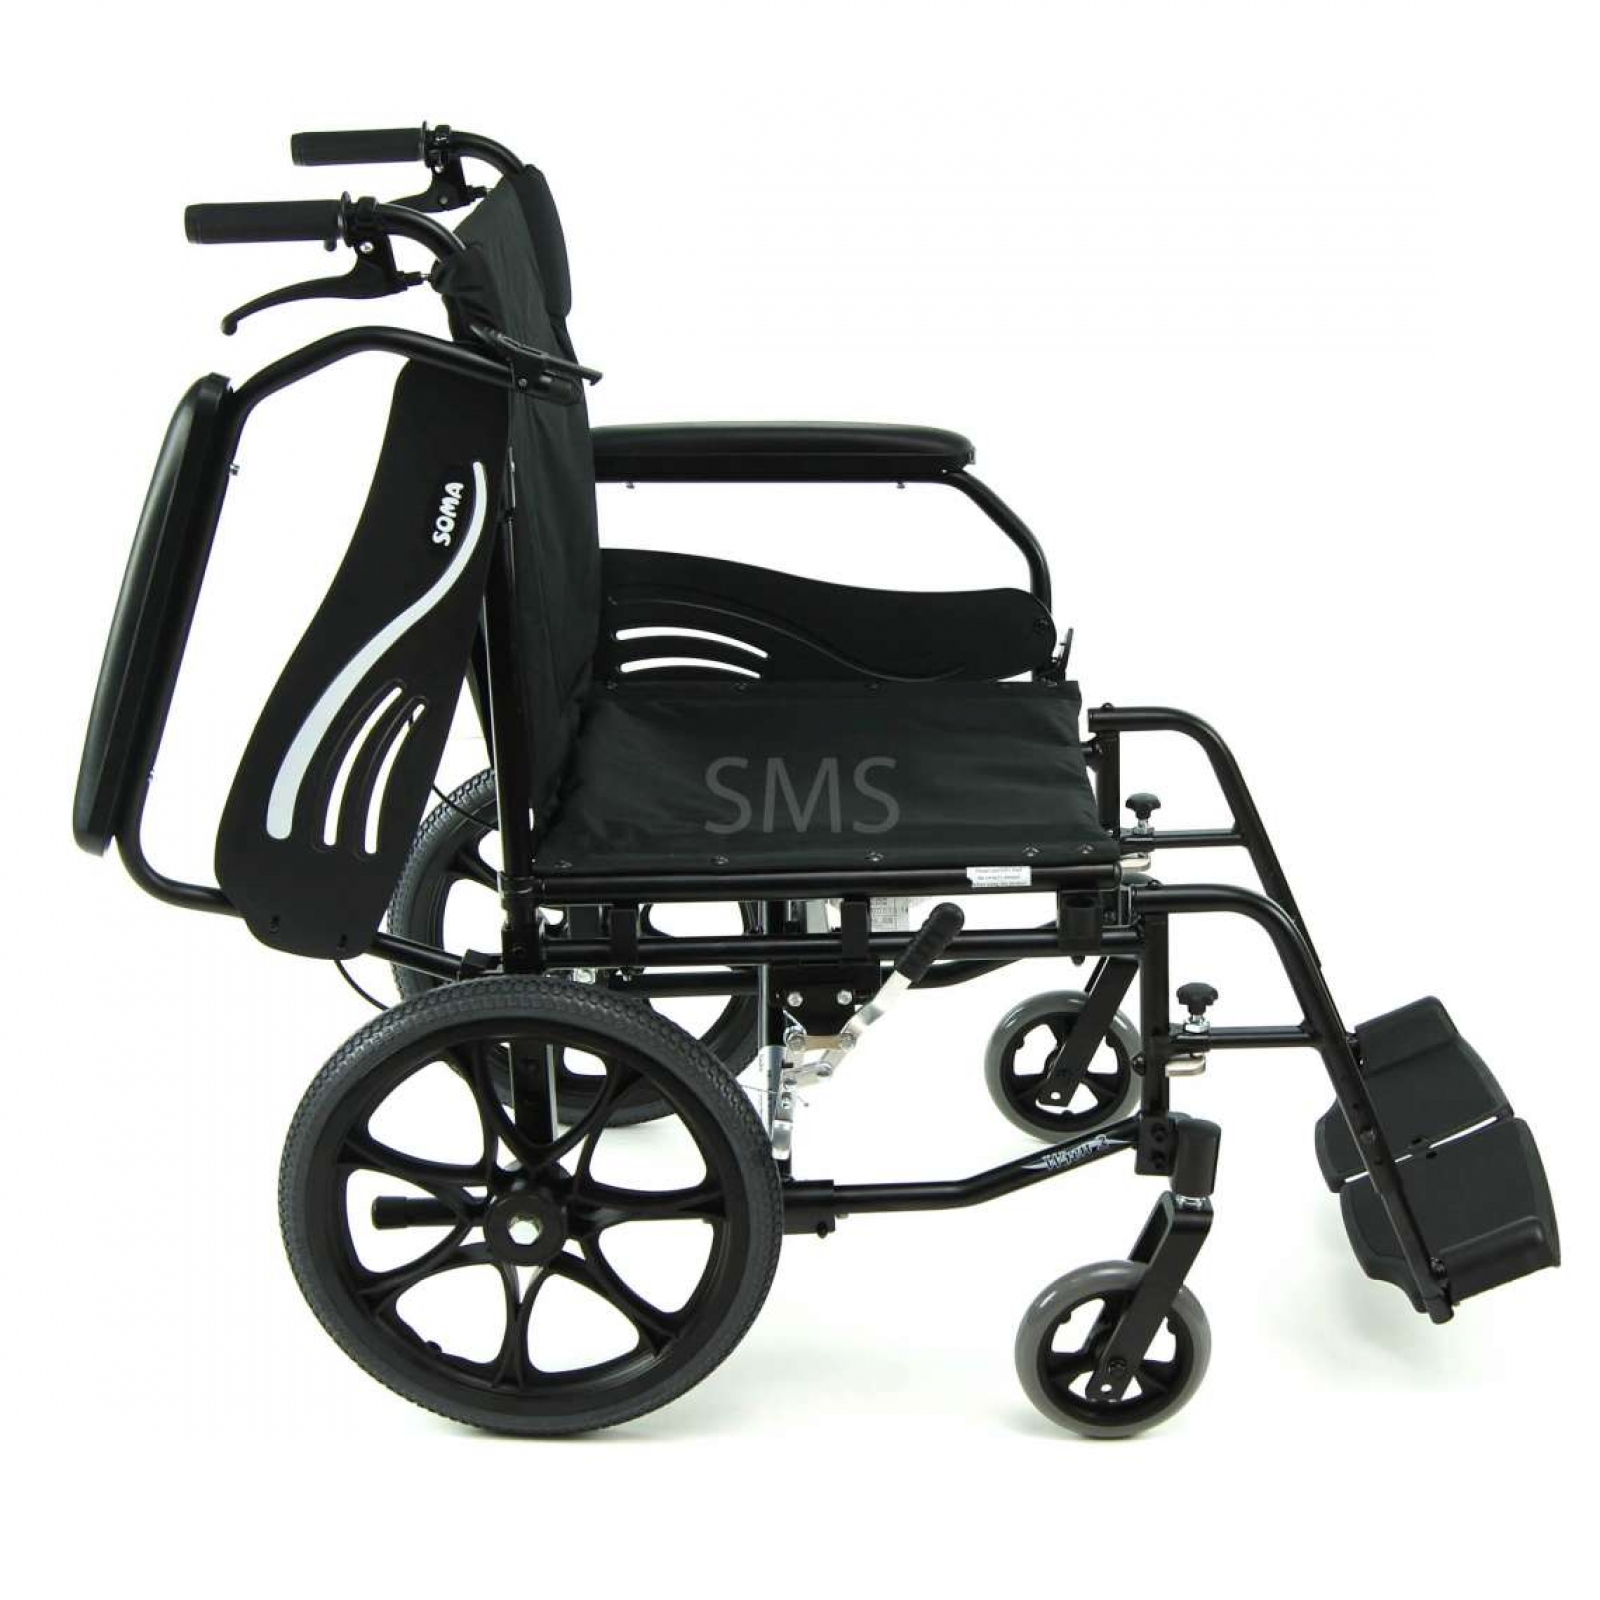 Karma Wren 2 Lightweight Transit Wheelchair